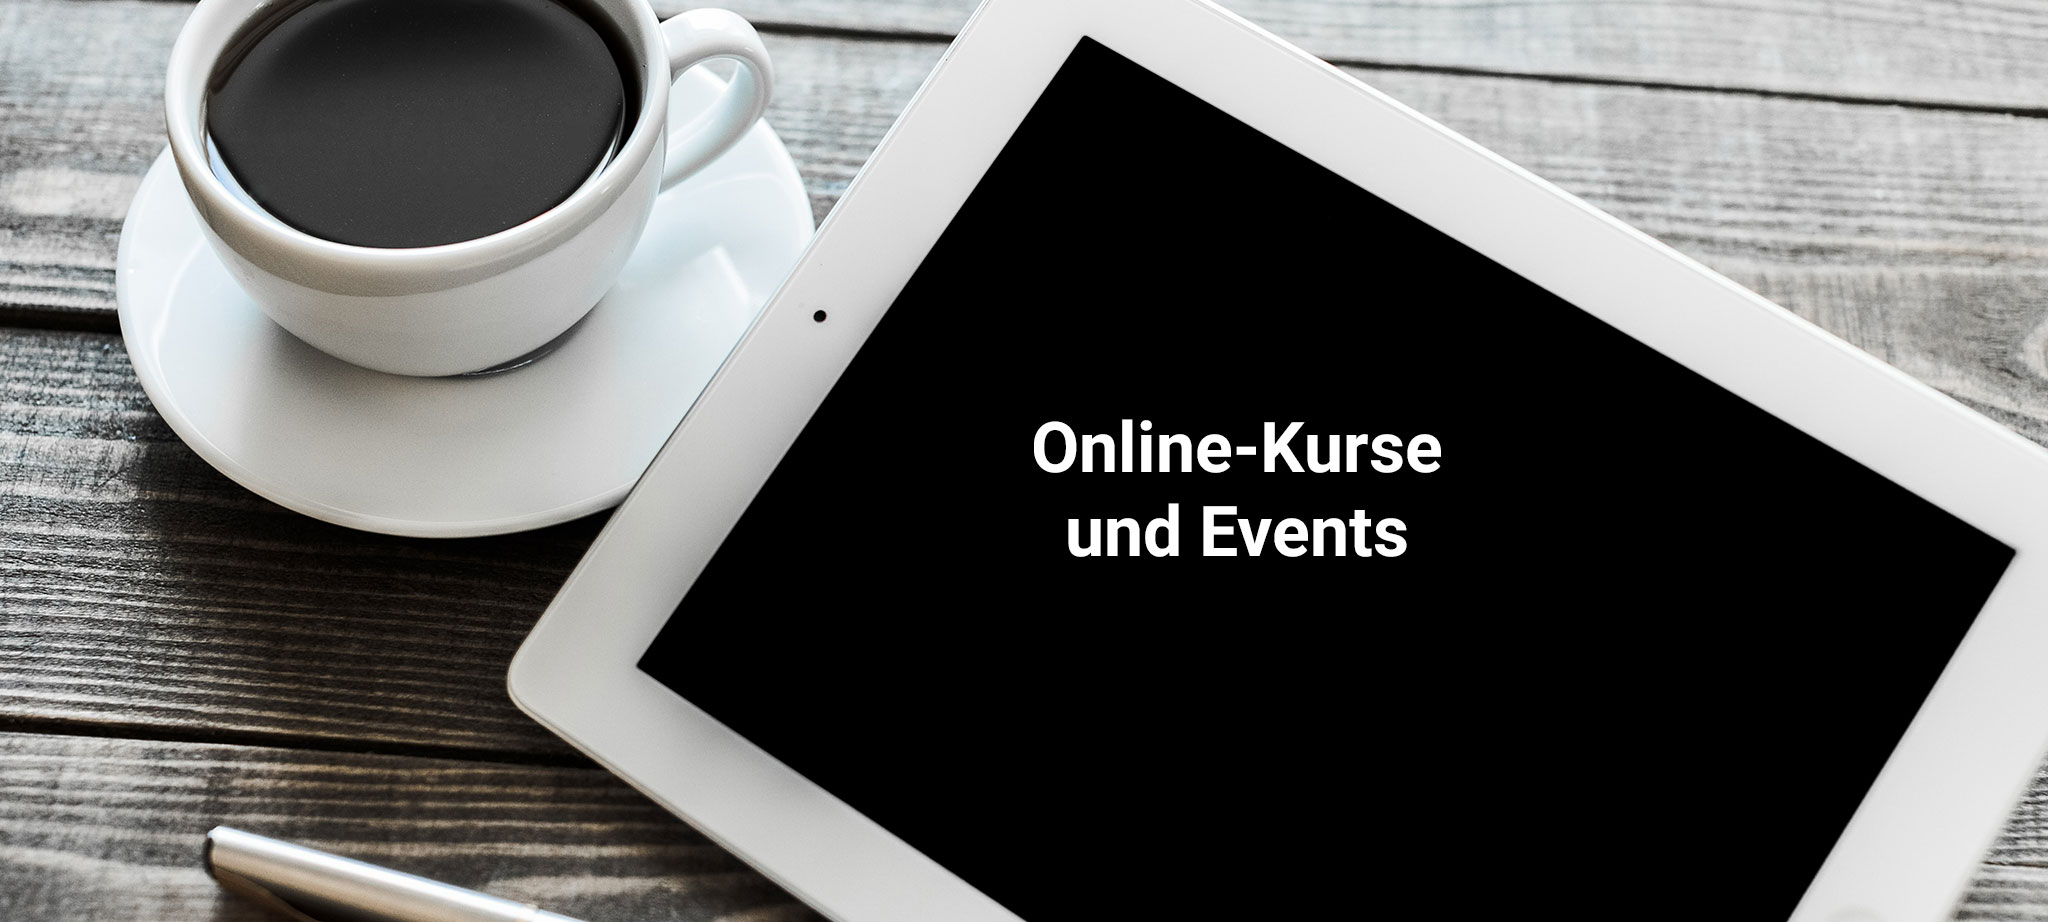 Online-Kurse und Events